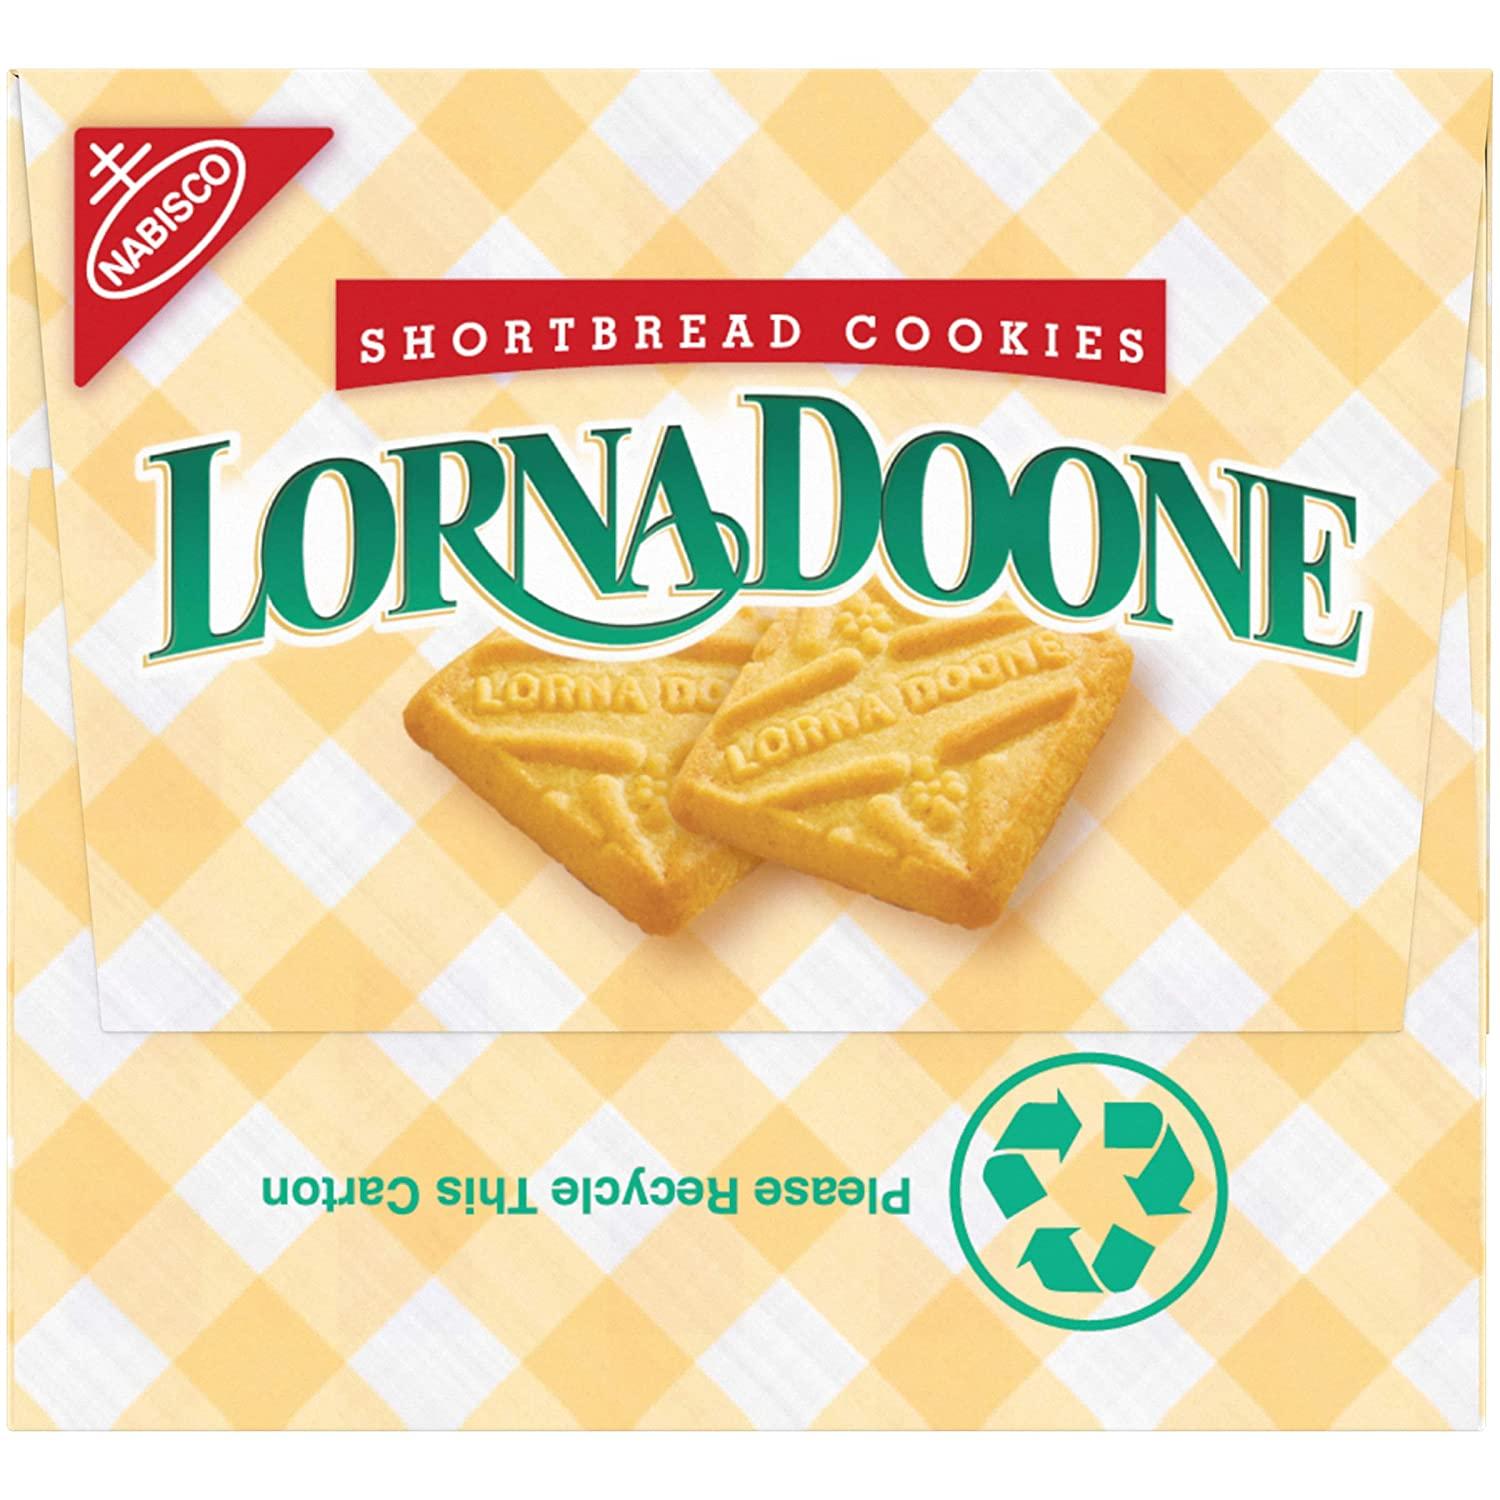 Lorna Doone Cookies, Shortbread - 3 pack, 1.5 oz packs